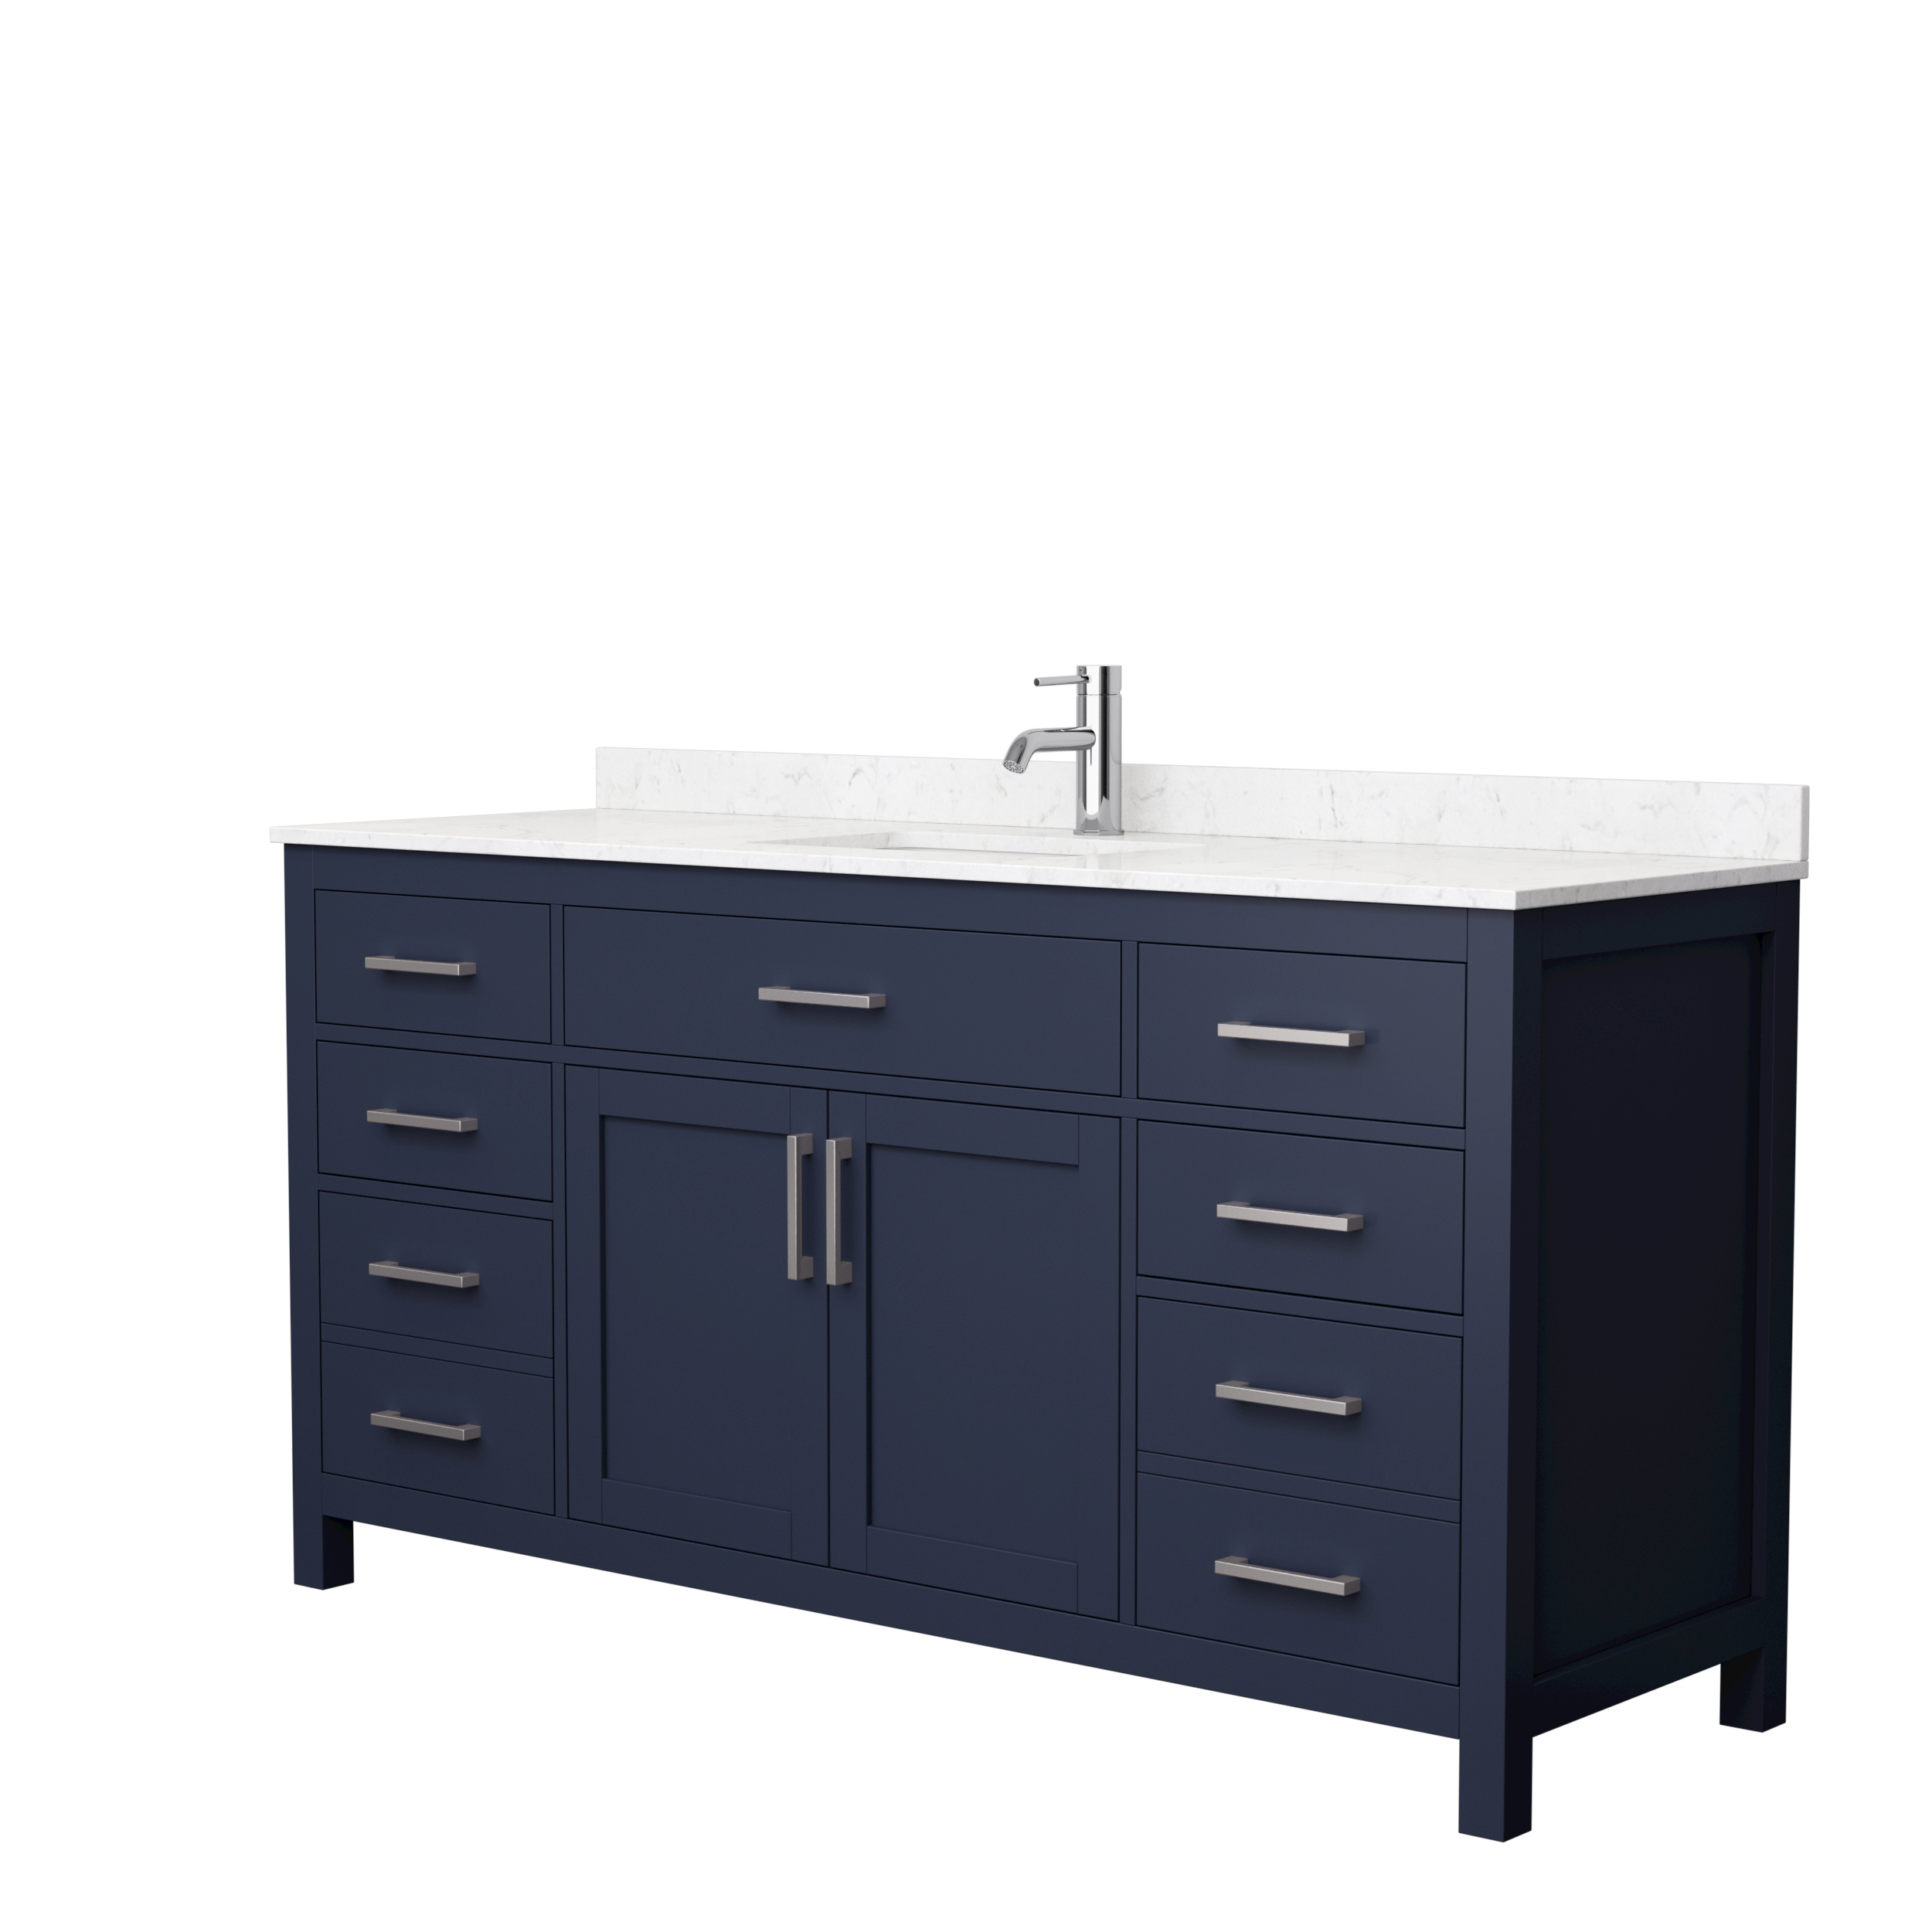 66" Single Bathroom Vanity in Dark Blue, Carrara Cultured Marble Countertop, Undermount Square Sink, Brushed Nickel Trim